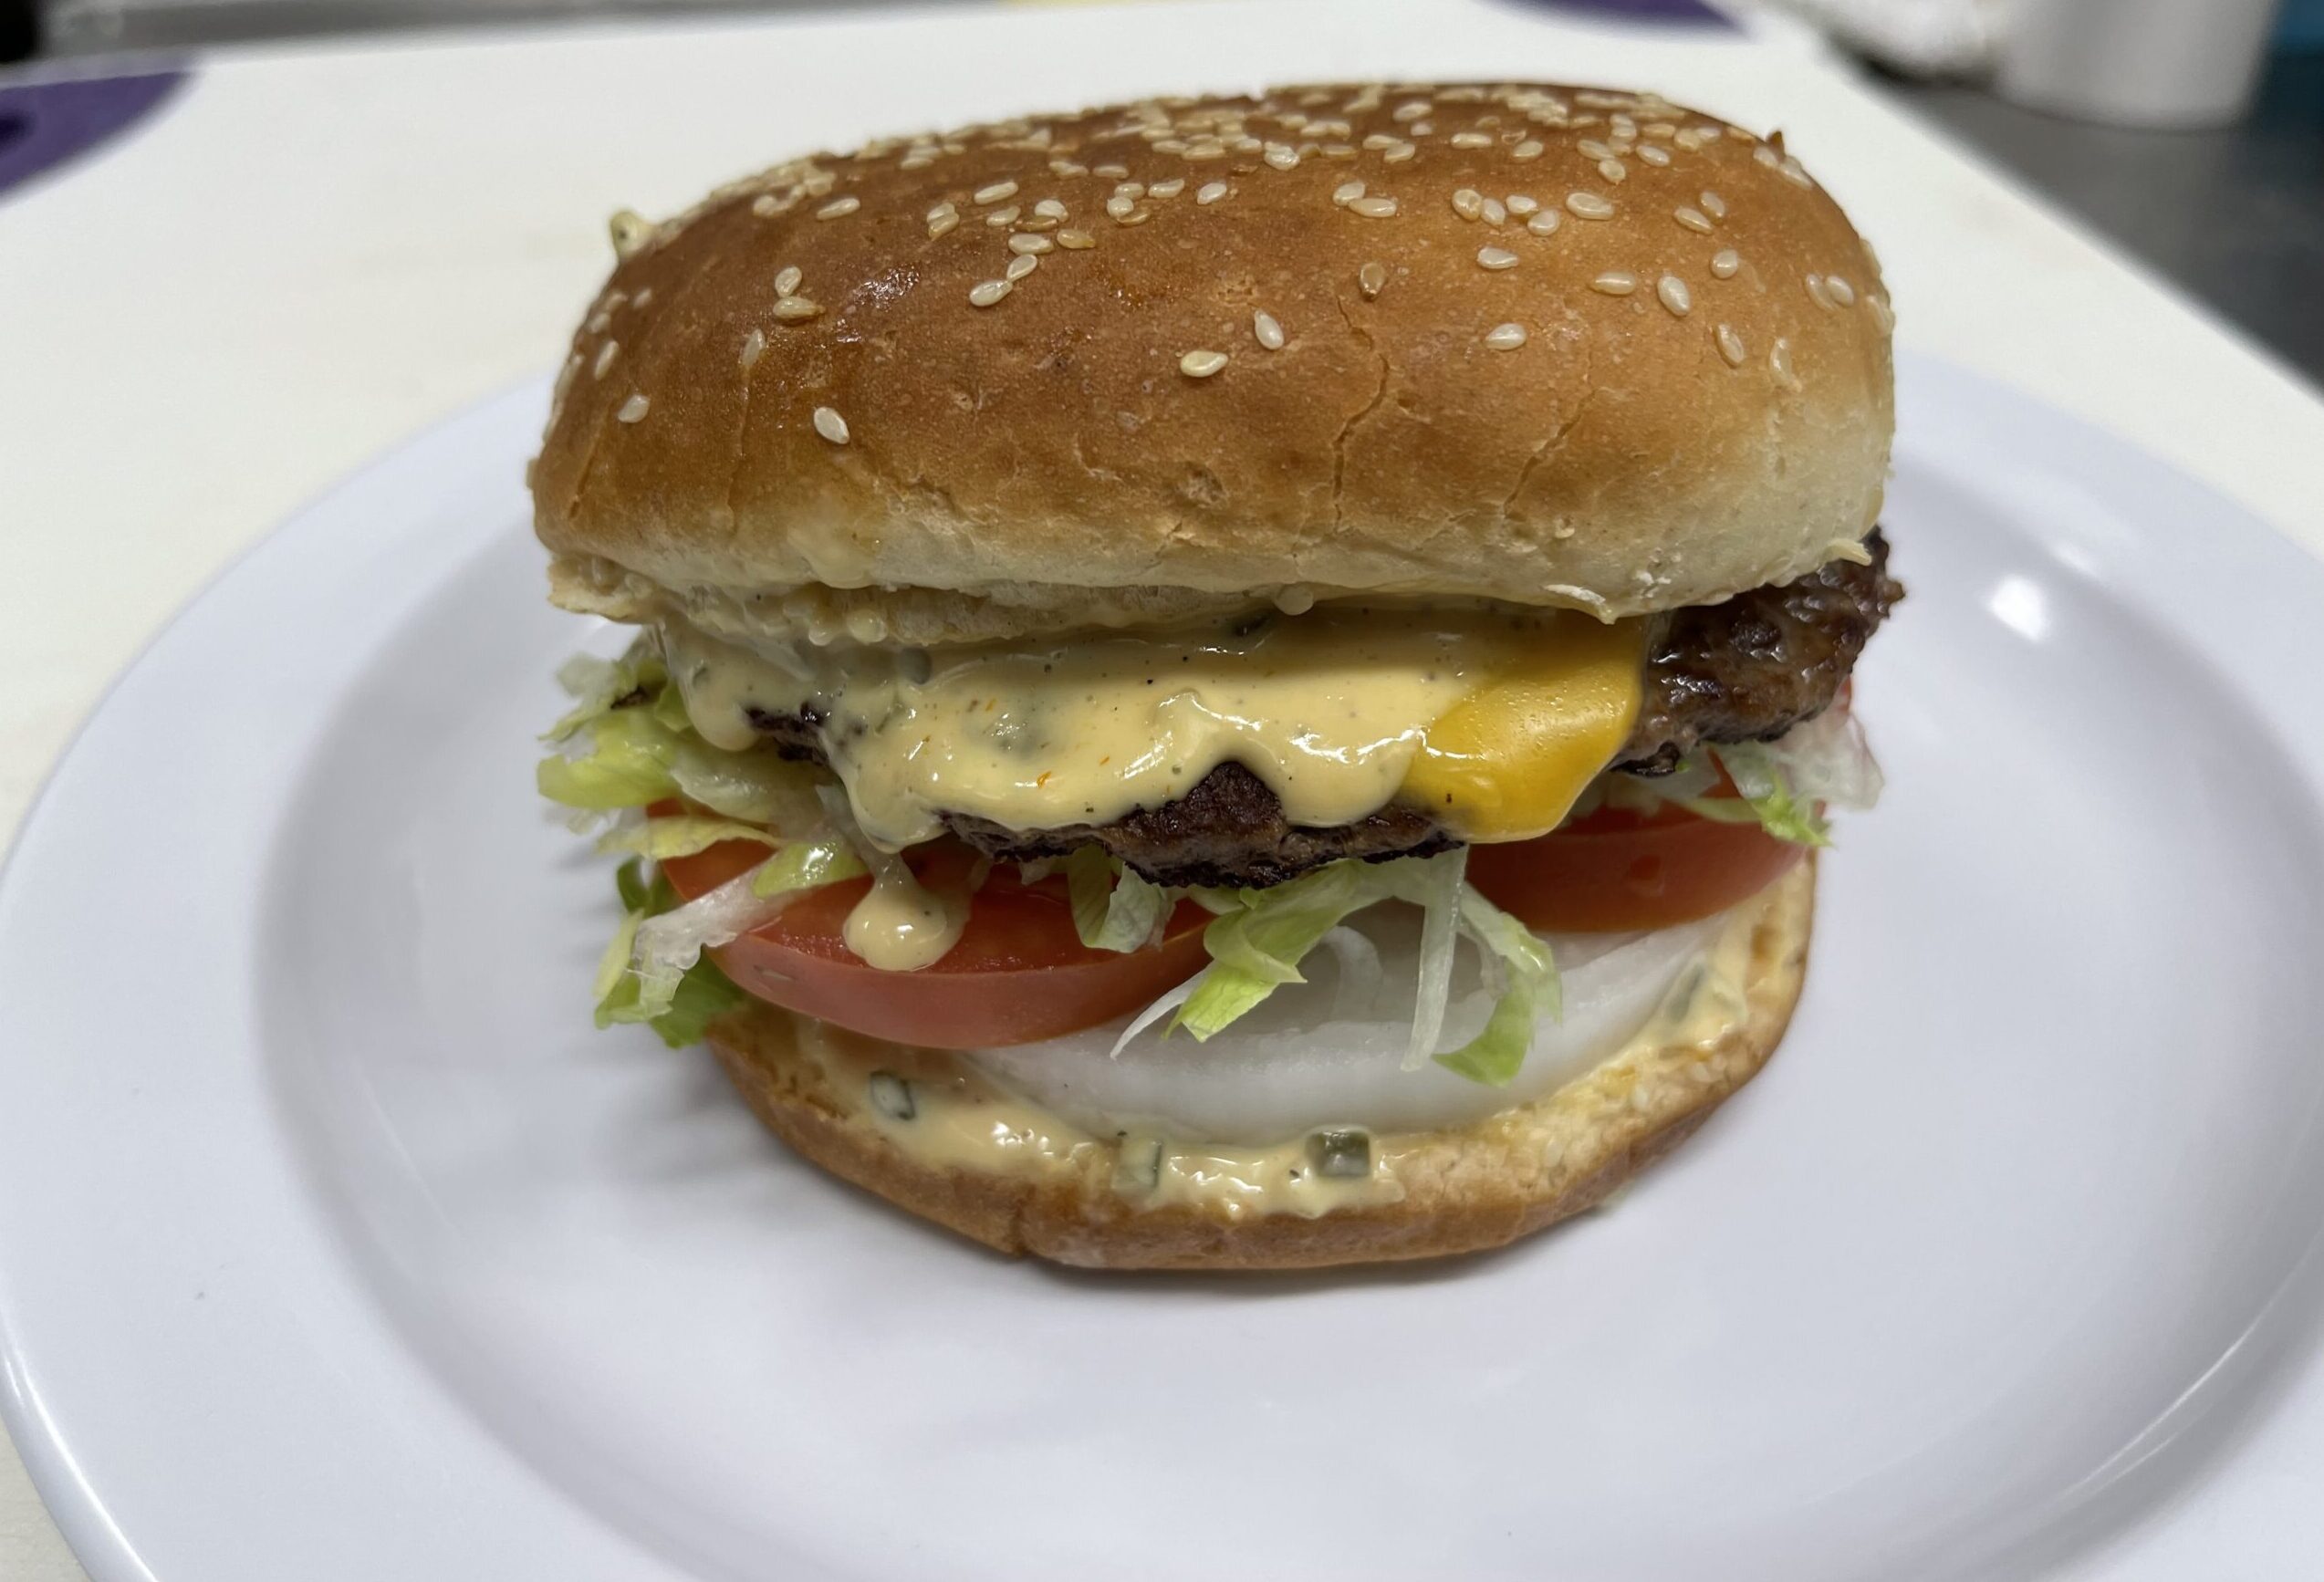 Cheeseburger $6.50